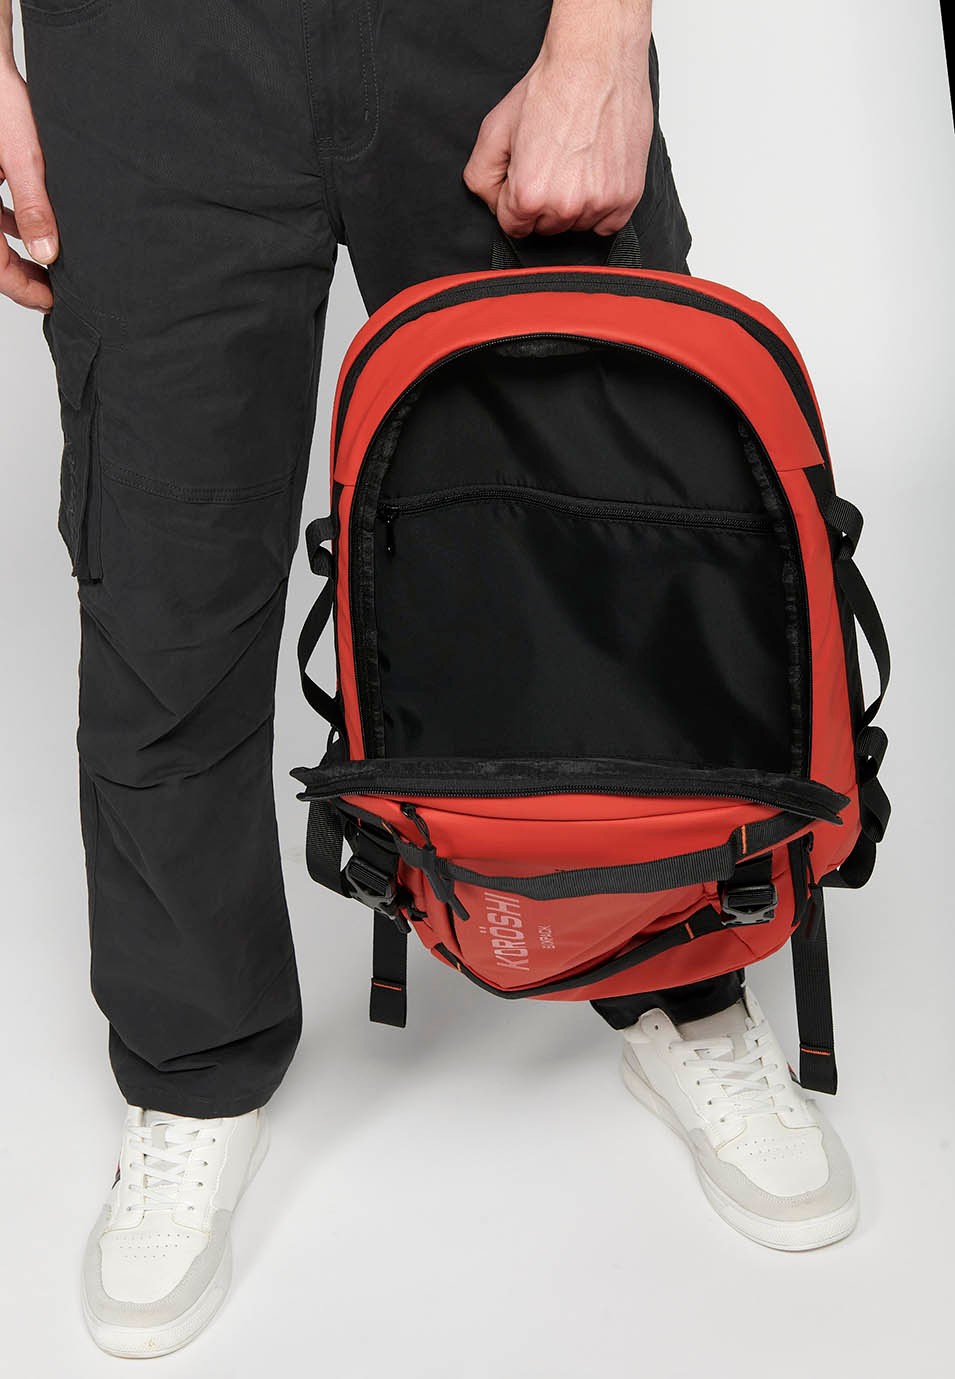 Koröshi-Rucksack mit zwei Reißverschlussfächern, eines für einen Laptop, und verstellbaren Trägern in Rot 6